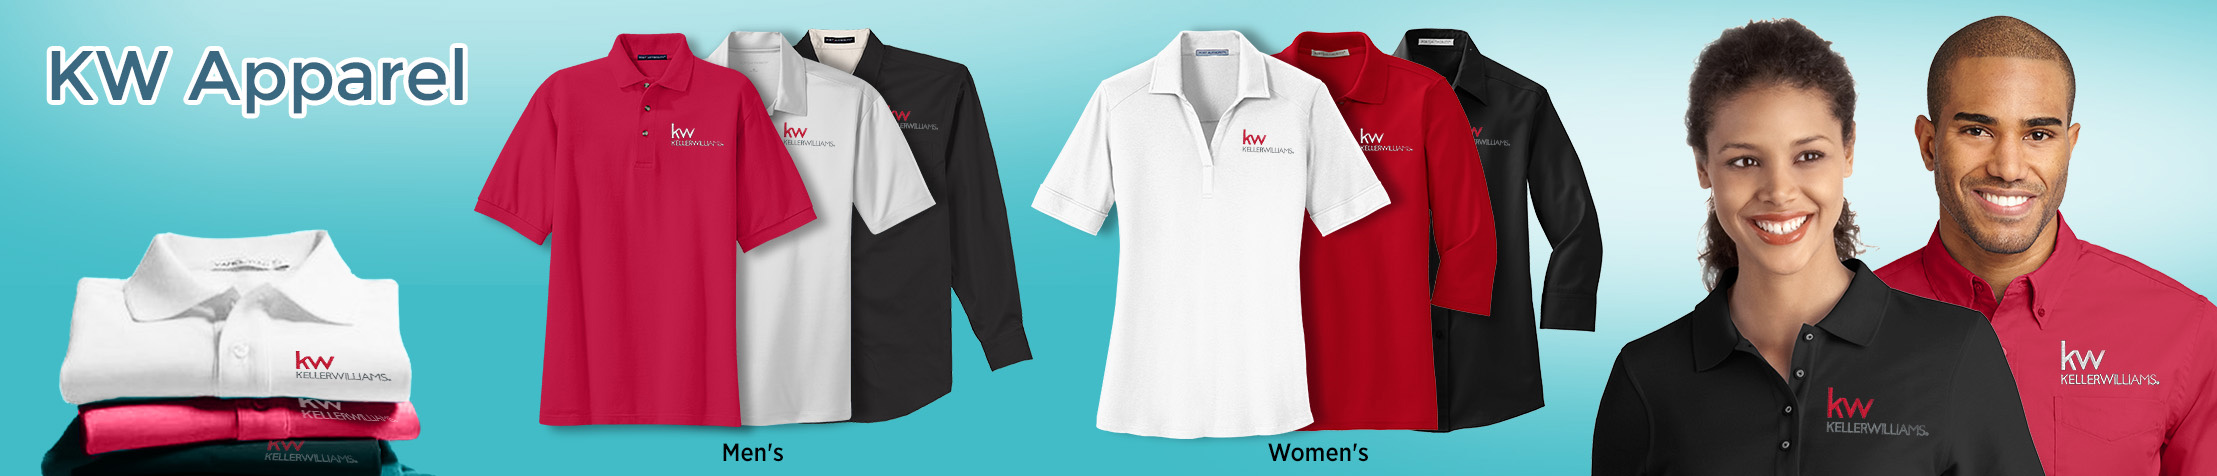 Keller Williams Real Estate Apparel - KW approved vendor logo apparel | Men's & Women's shirts | BestPrintBuy.com